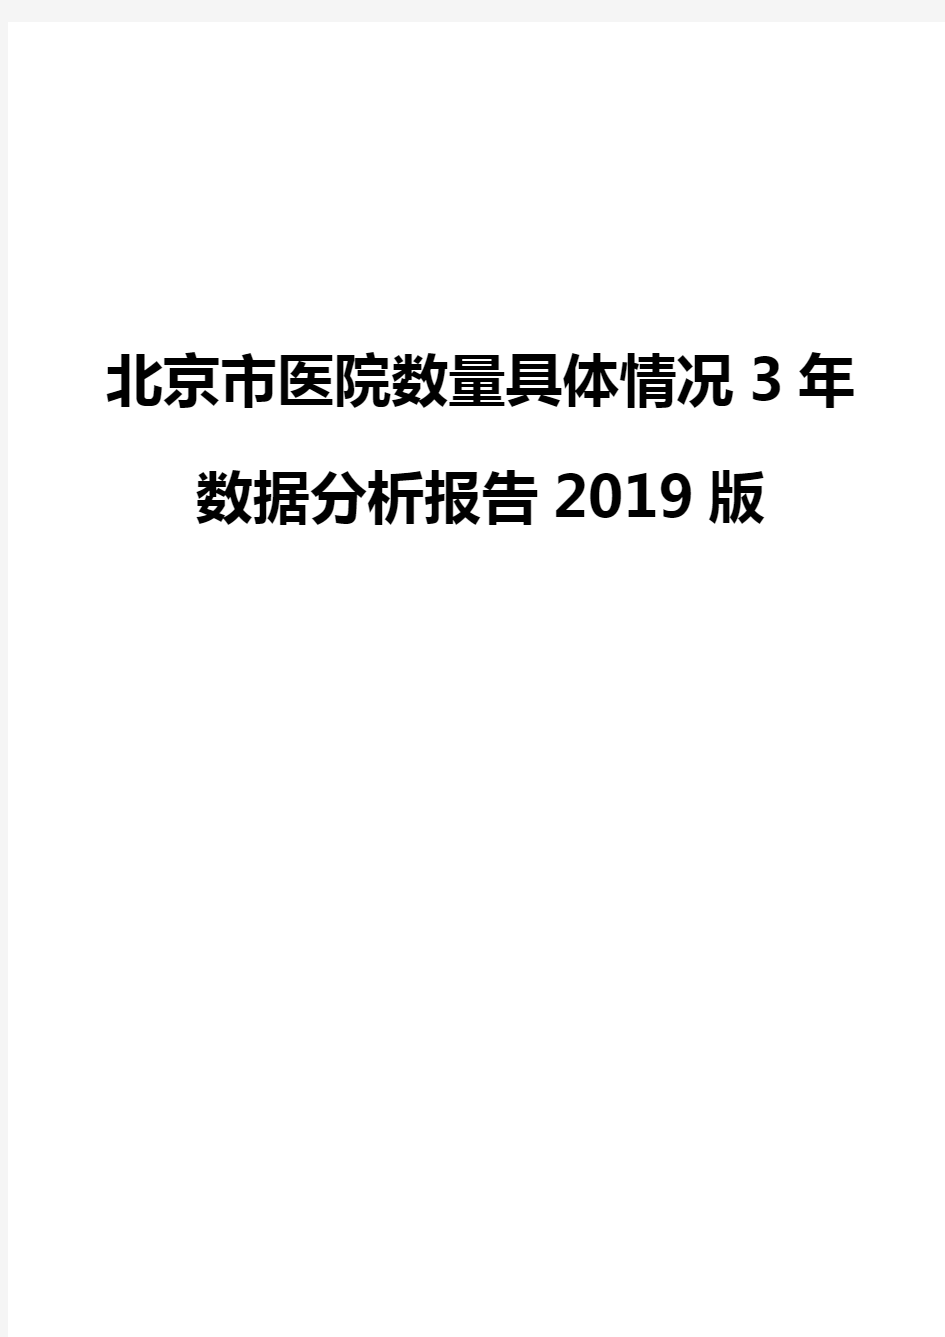 北京市医院数量具体情况3年数据分析报告2019版